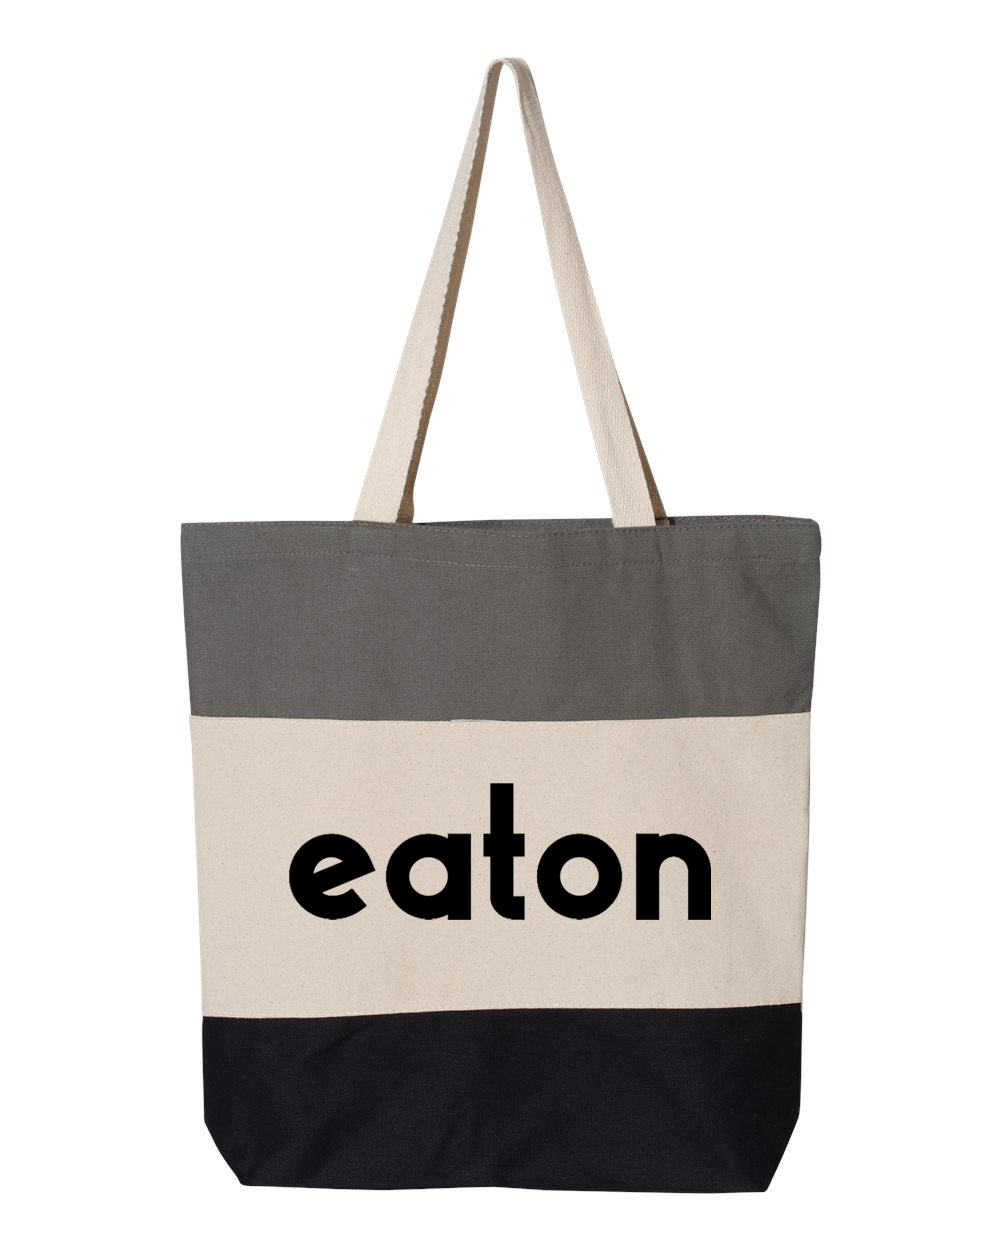 Eaton Tri-Color Tote Bag